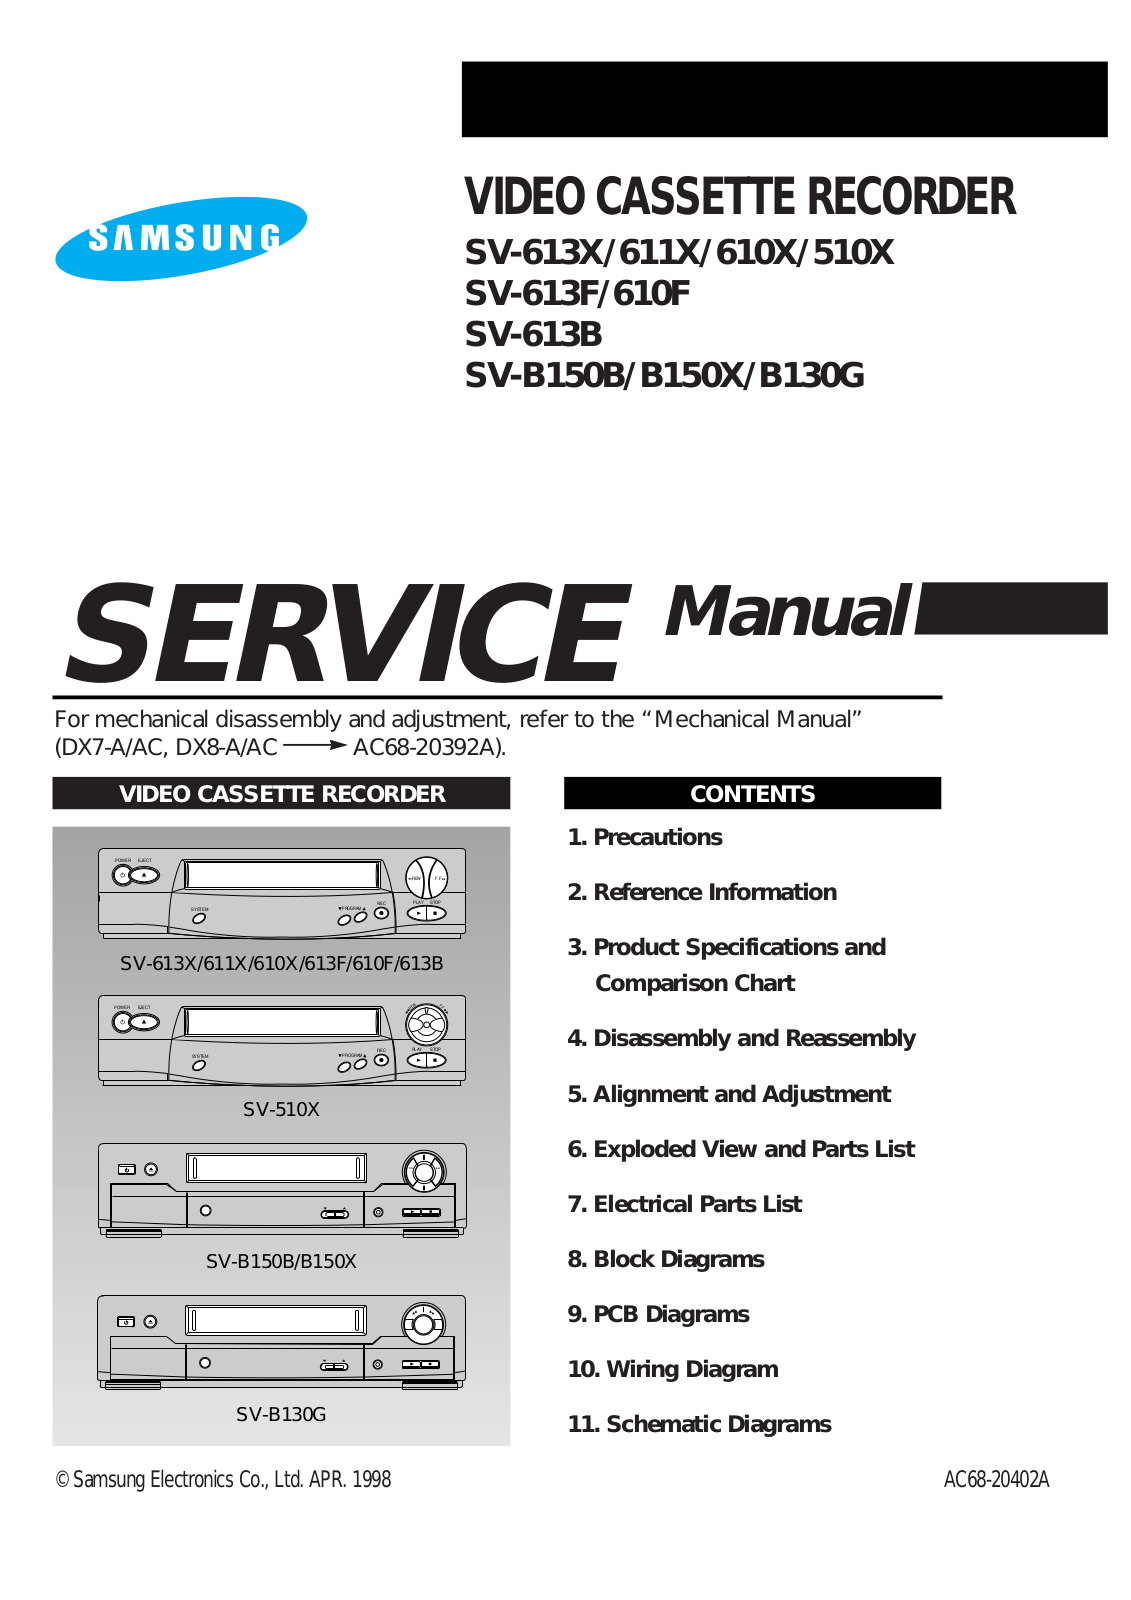 SAMSUNG SV-613X, SV-611X, SV-610X, SV-510X, SV-613F Service Manual